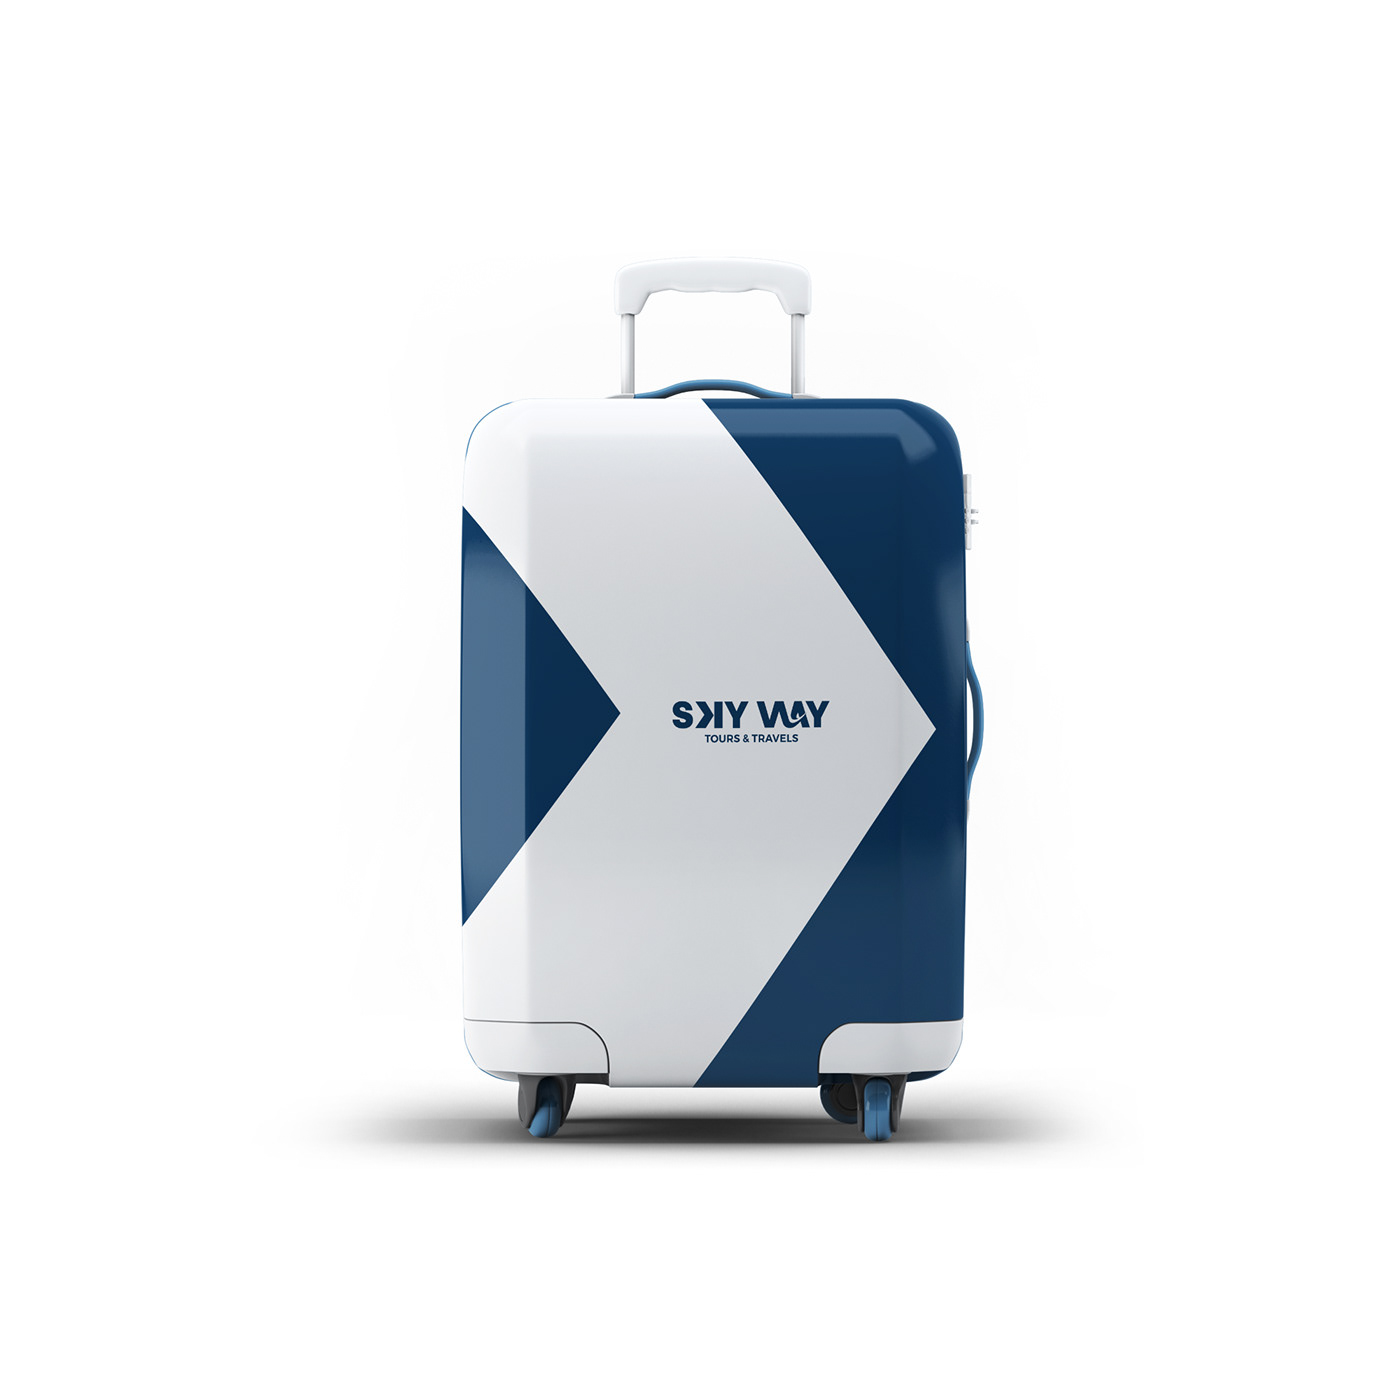 branding  logo Logo Design logofolio logos Mockup Skyway tours and travels Travel